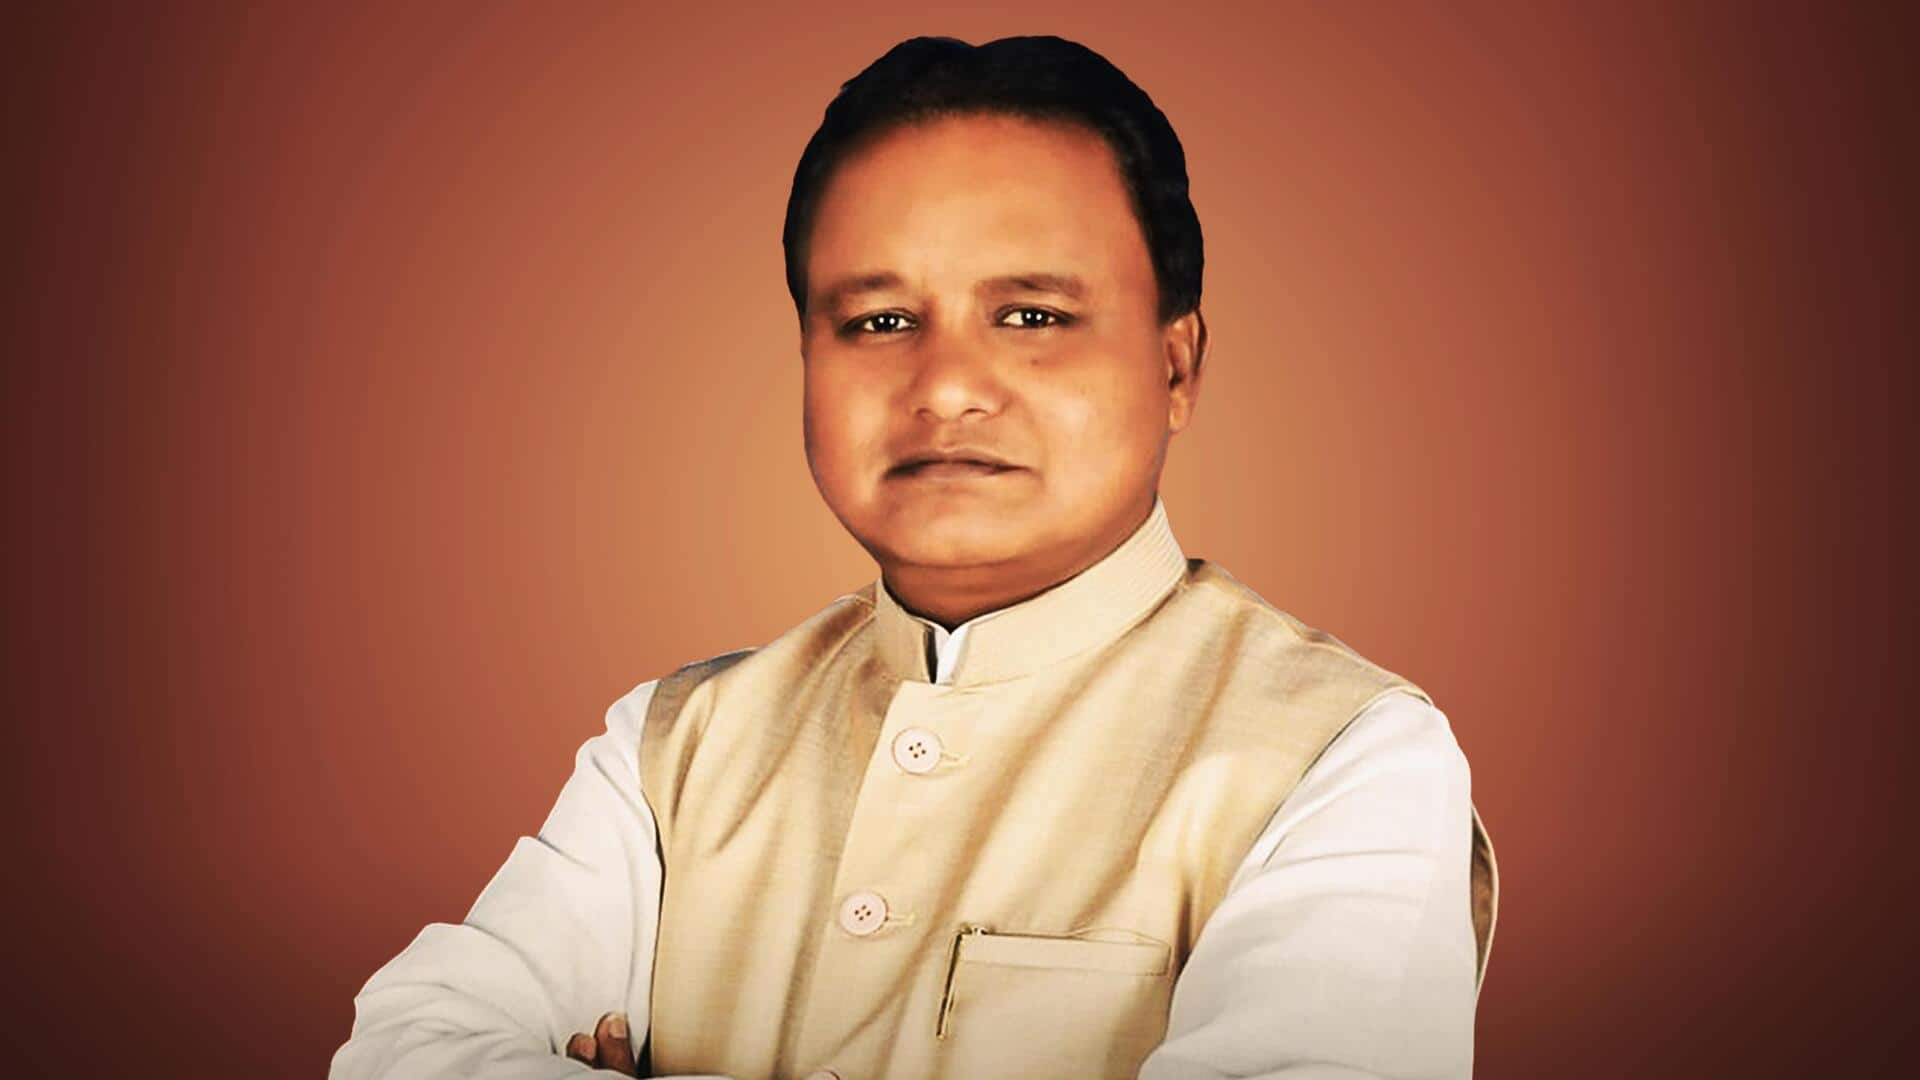 मोहन मांझी होंगे ओडिशा के नए मुख्यमंत्री, भाजपा विधायक दल की बैठक में फैसला